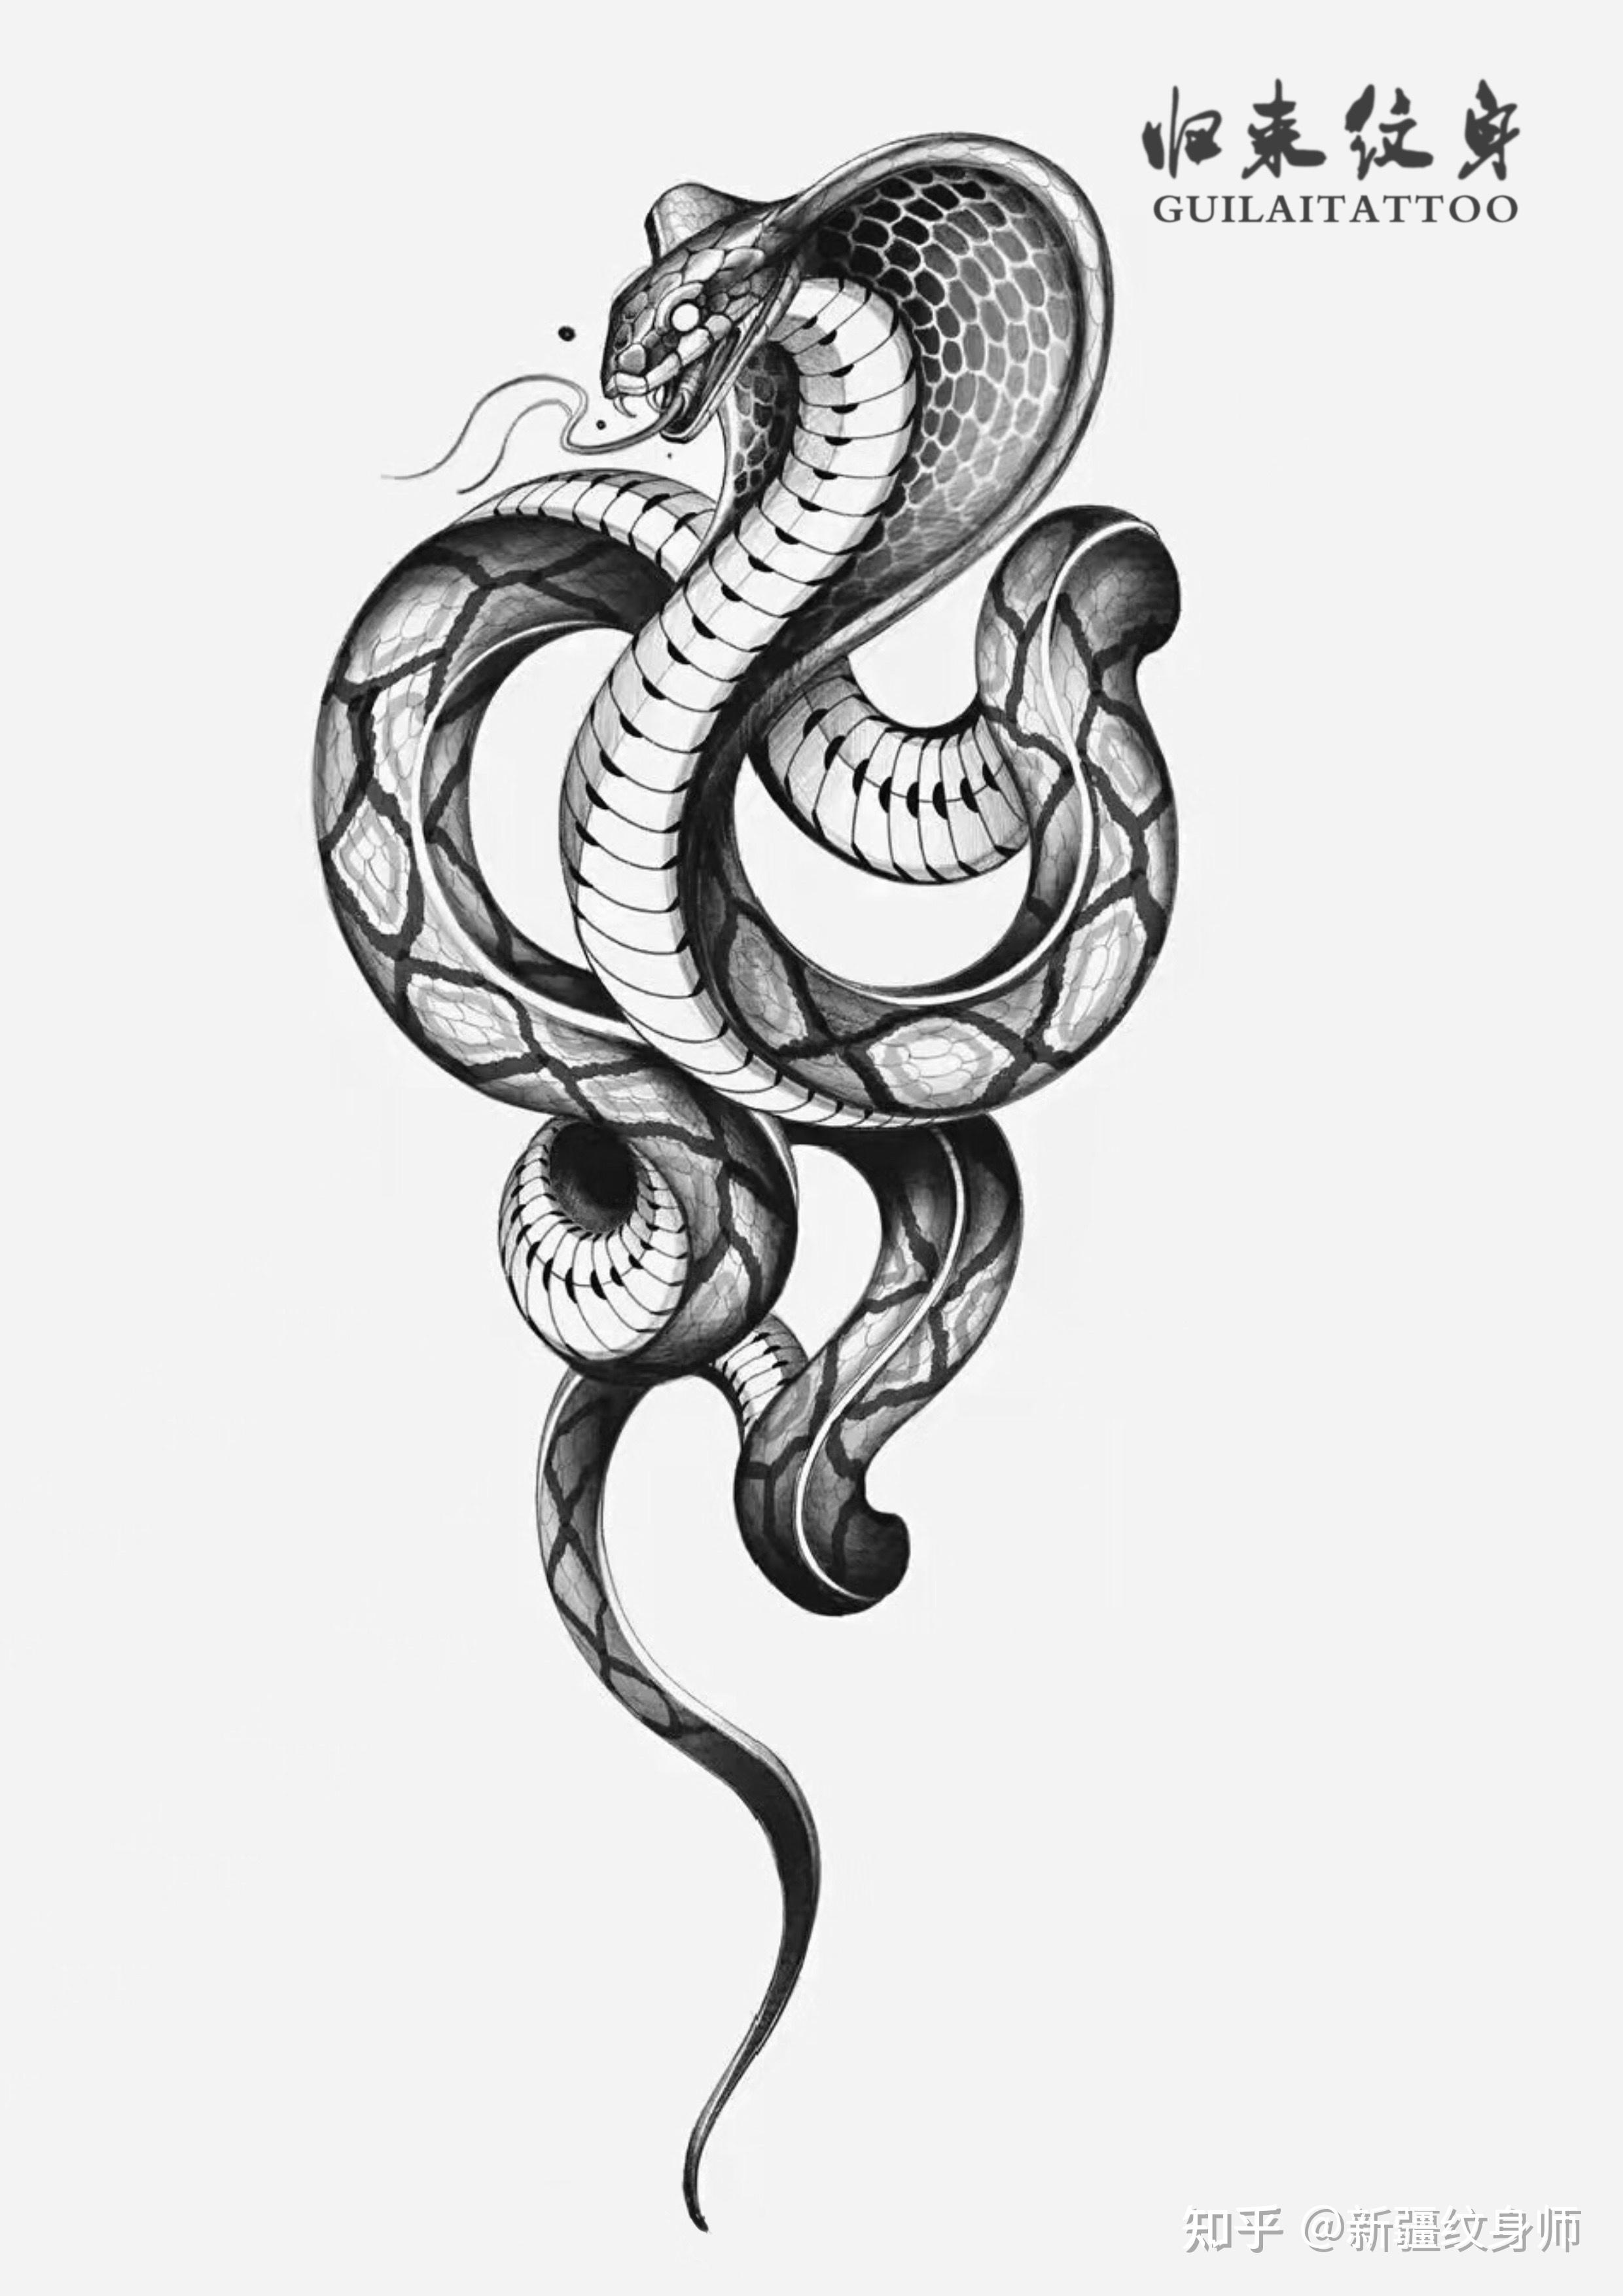 手臂黑灰蛇纹身图案